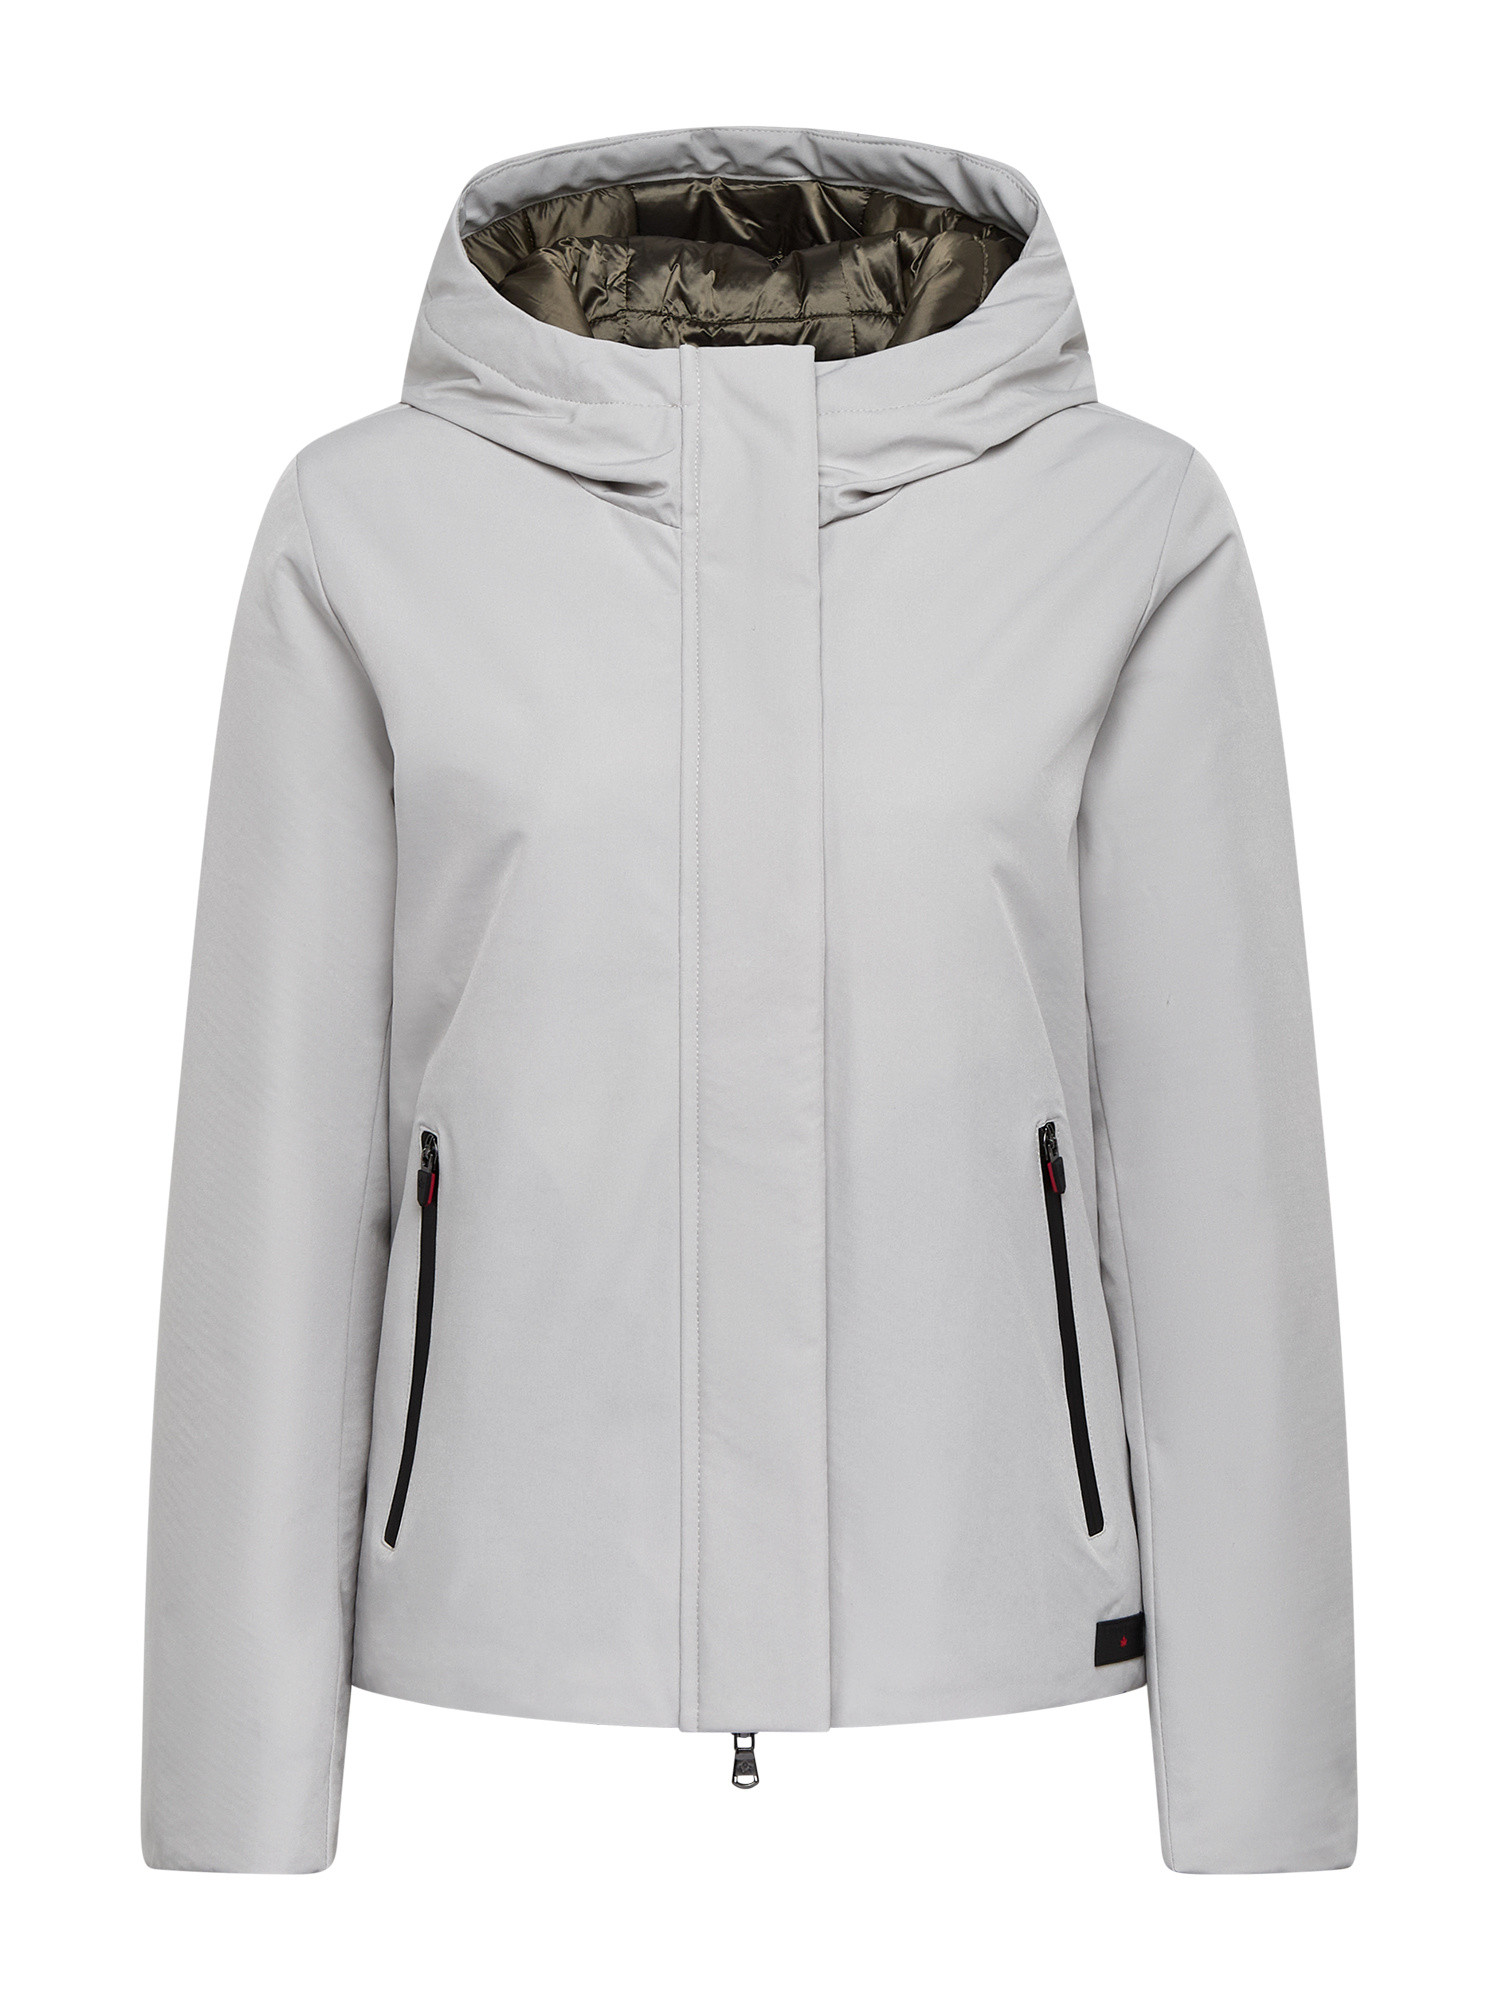 Canadian - Soft zip Jacket, Light Grey, large image number 0